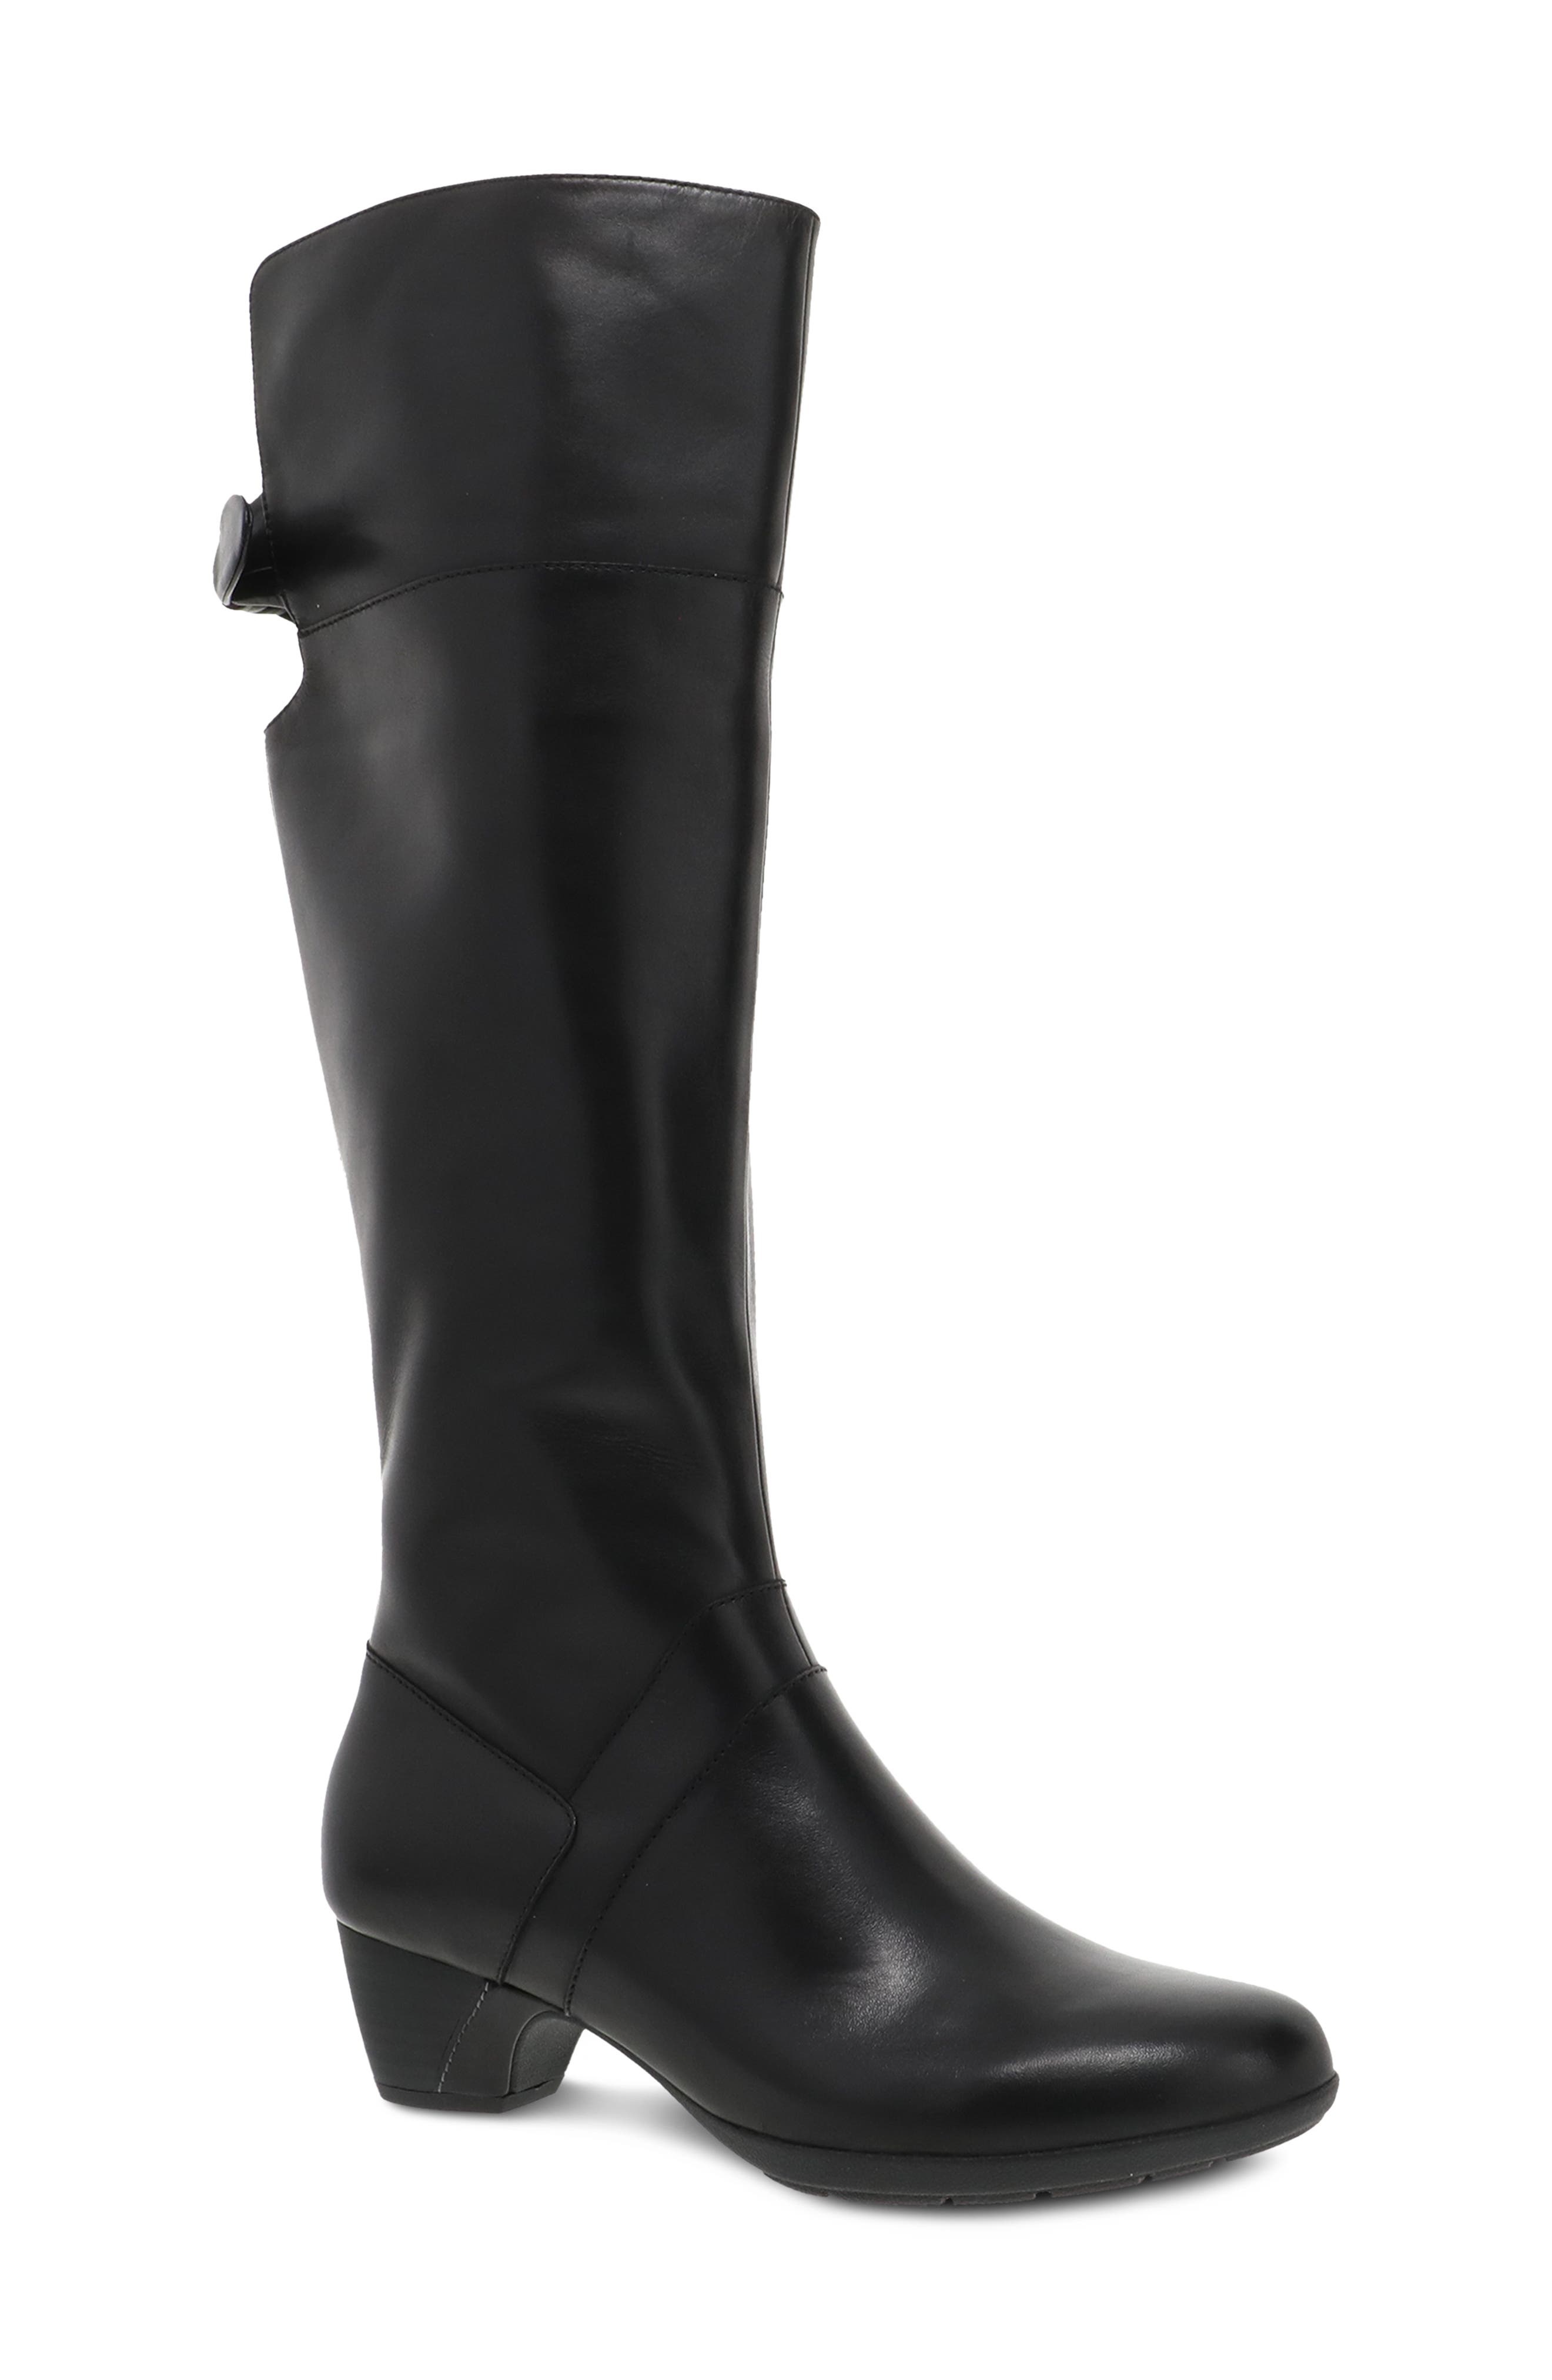 dansko womens winter boots